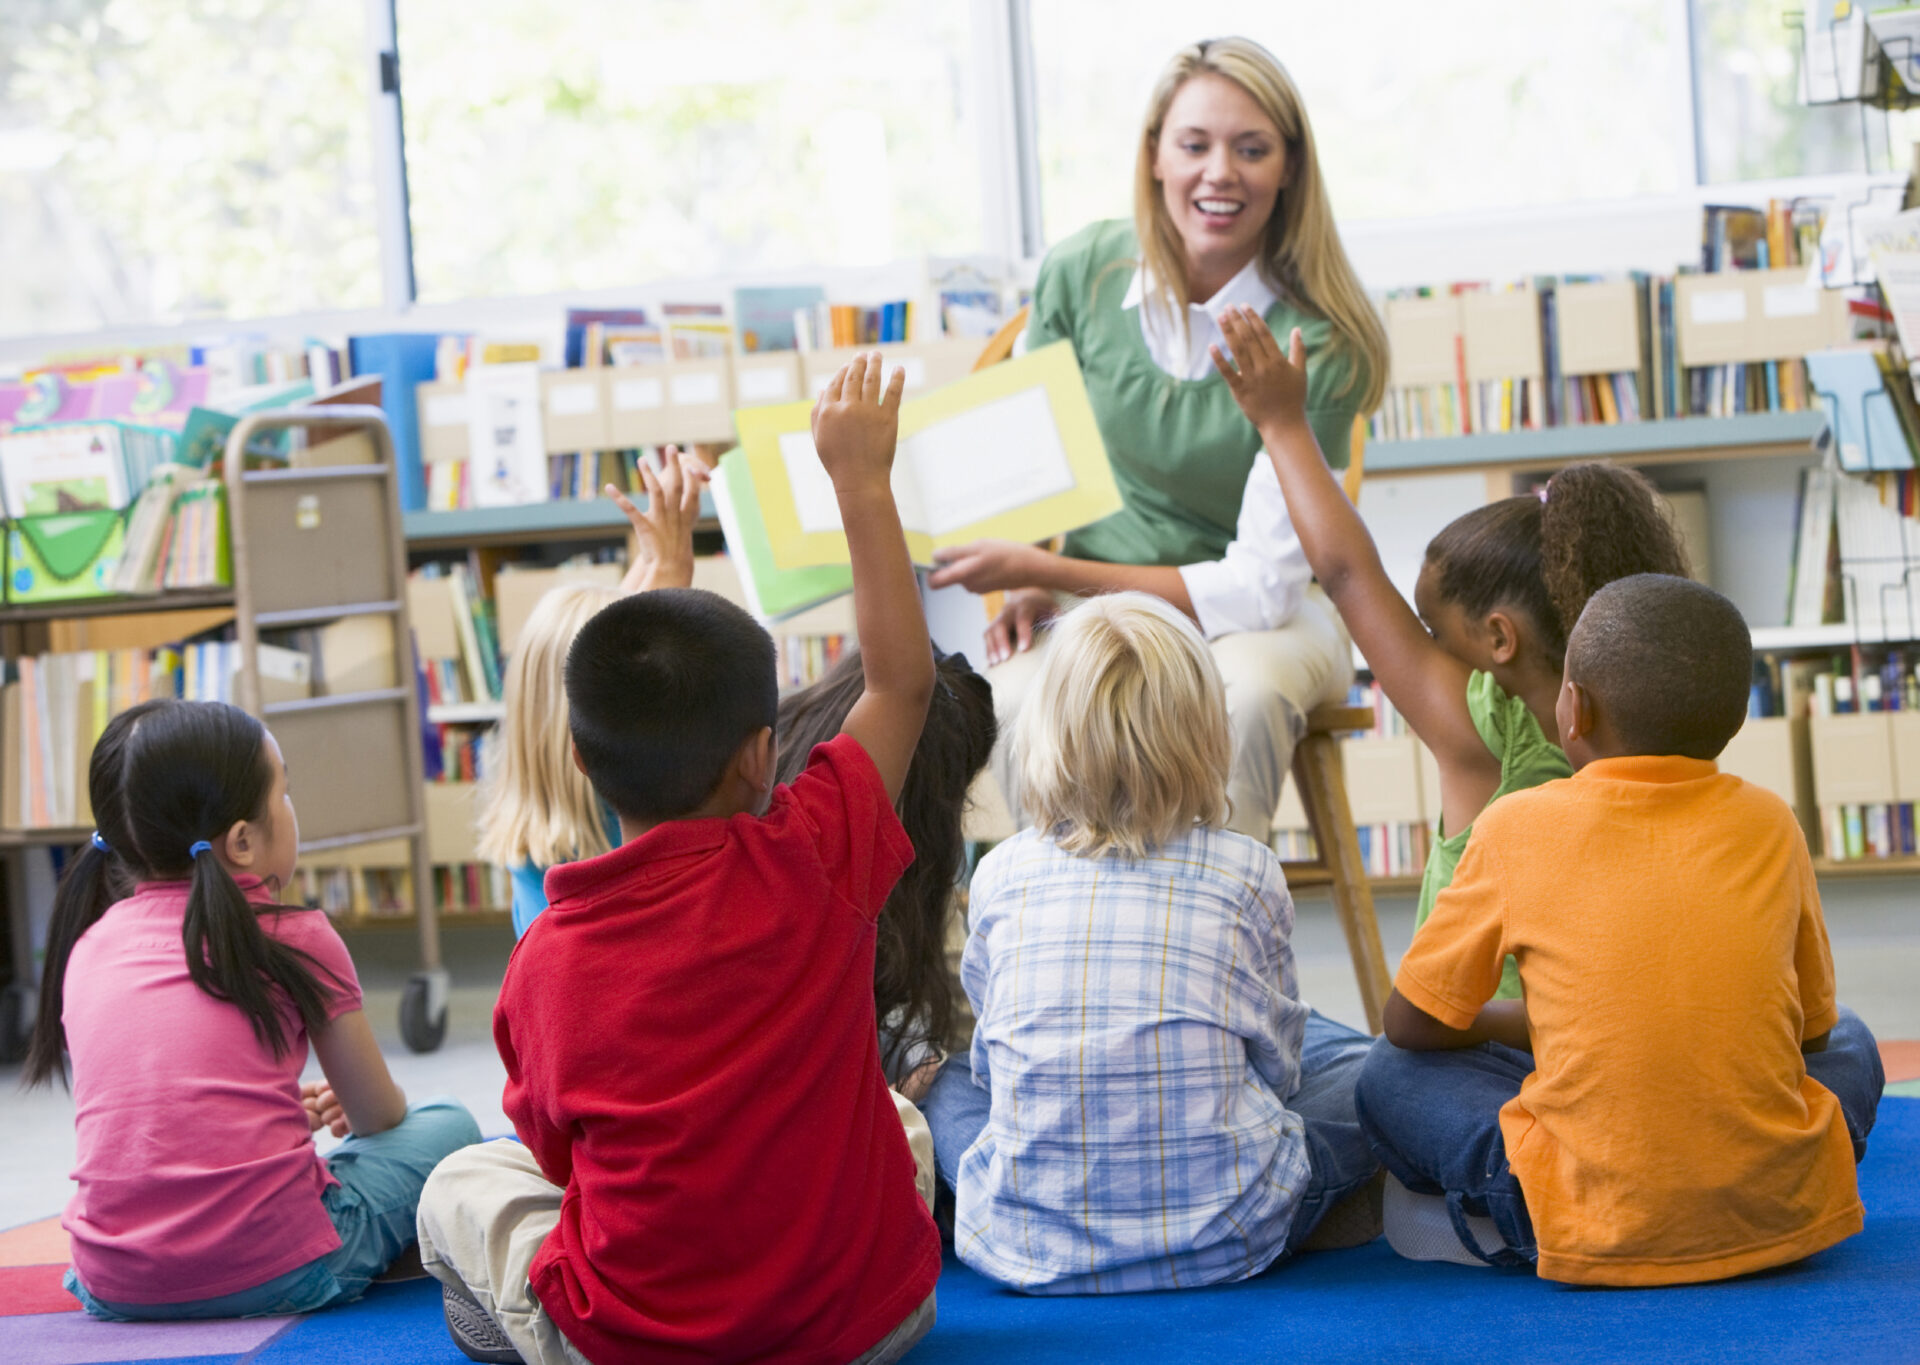 一群年幼的孩子坐在地板上，其中许多人举起了手，面前是一位微笑的金发女郎，她穿着浅绿色毛衣，手里拿着一本图画书。 场景背景是书架前。